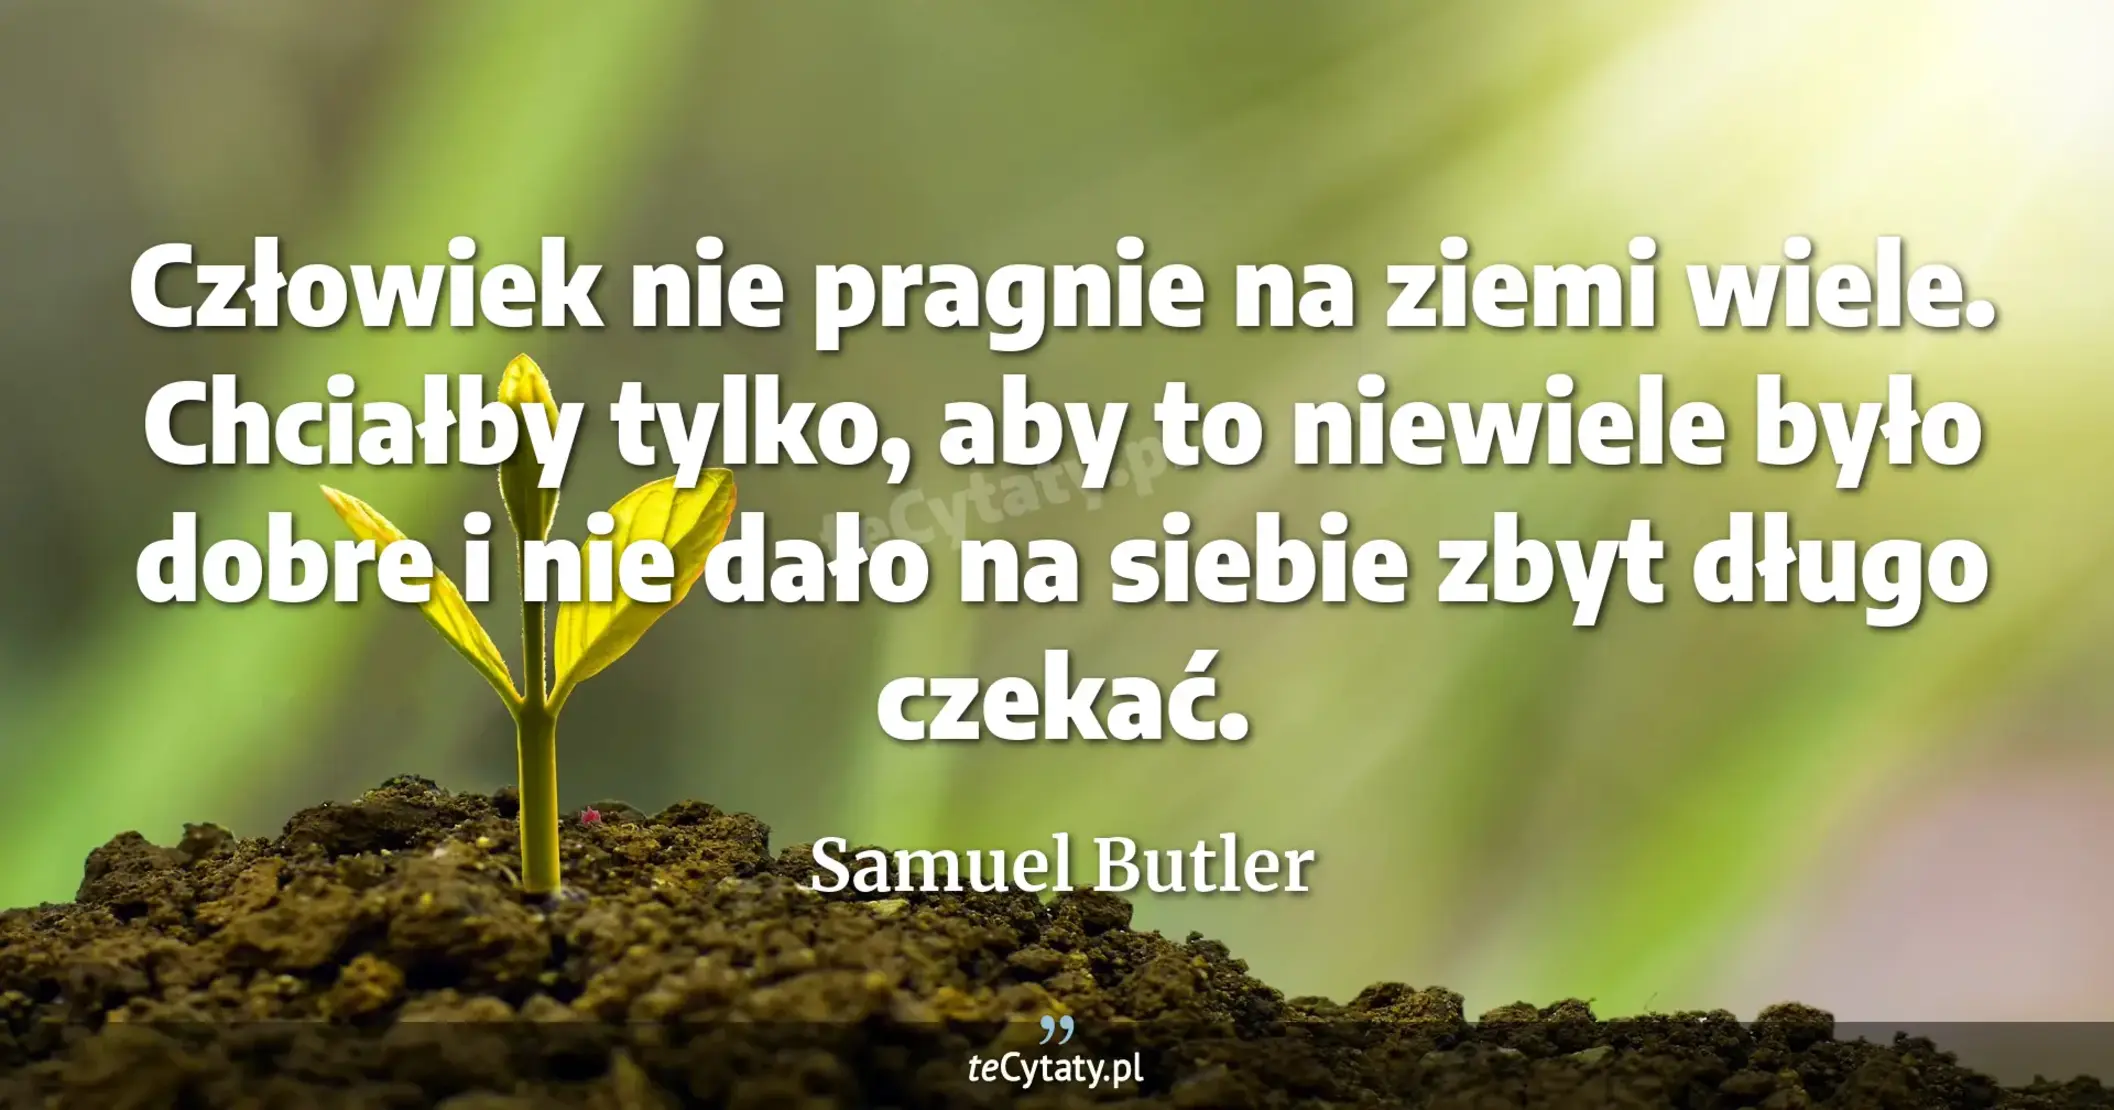 Człowiek nie pragnie na ziemi wiele. Chciałby tylko, aby to niewiele było dobre i nie dało na siebie zbyt długo czekać. - Samuel Butler